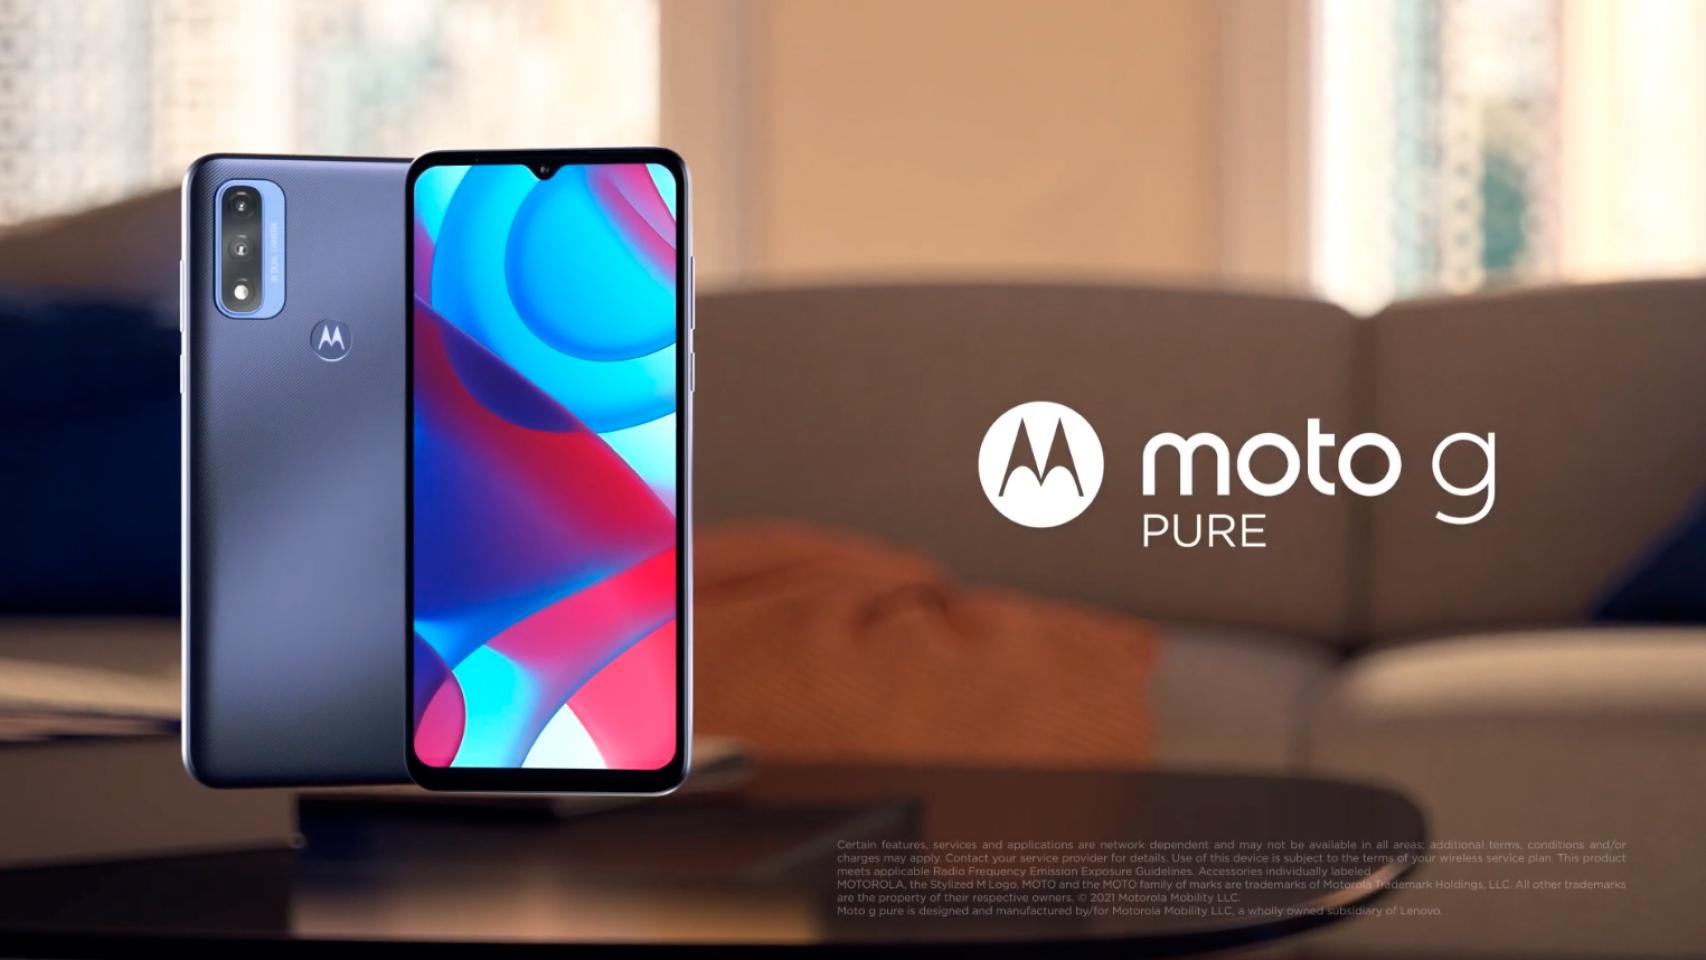 Nuevo Motorola Moto G Pure, características, precio y ficha técnica